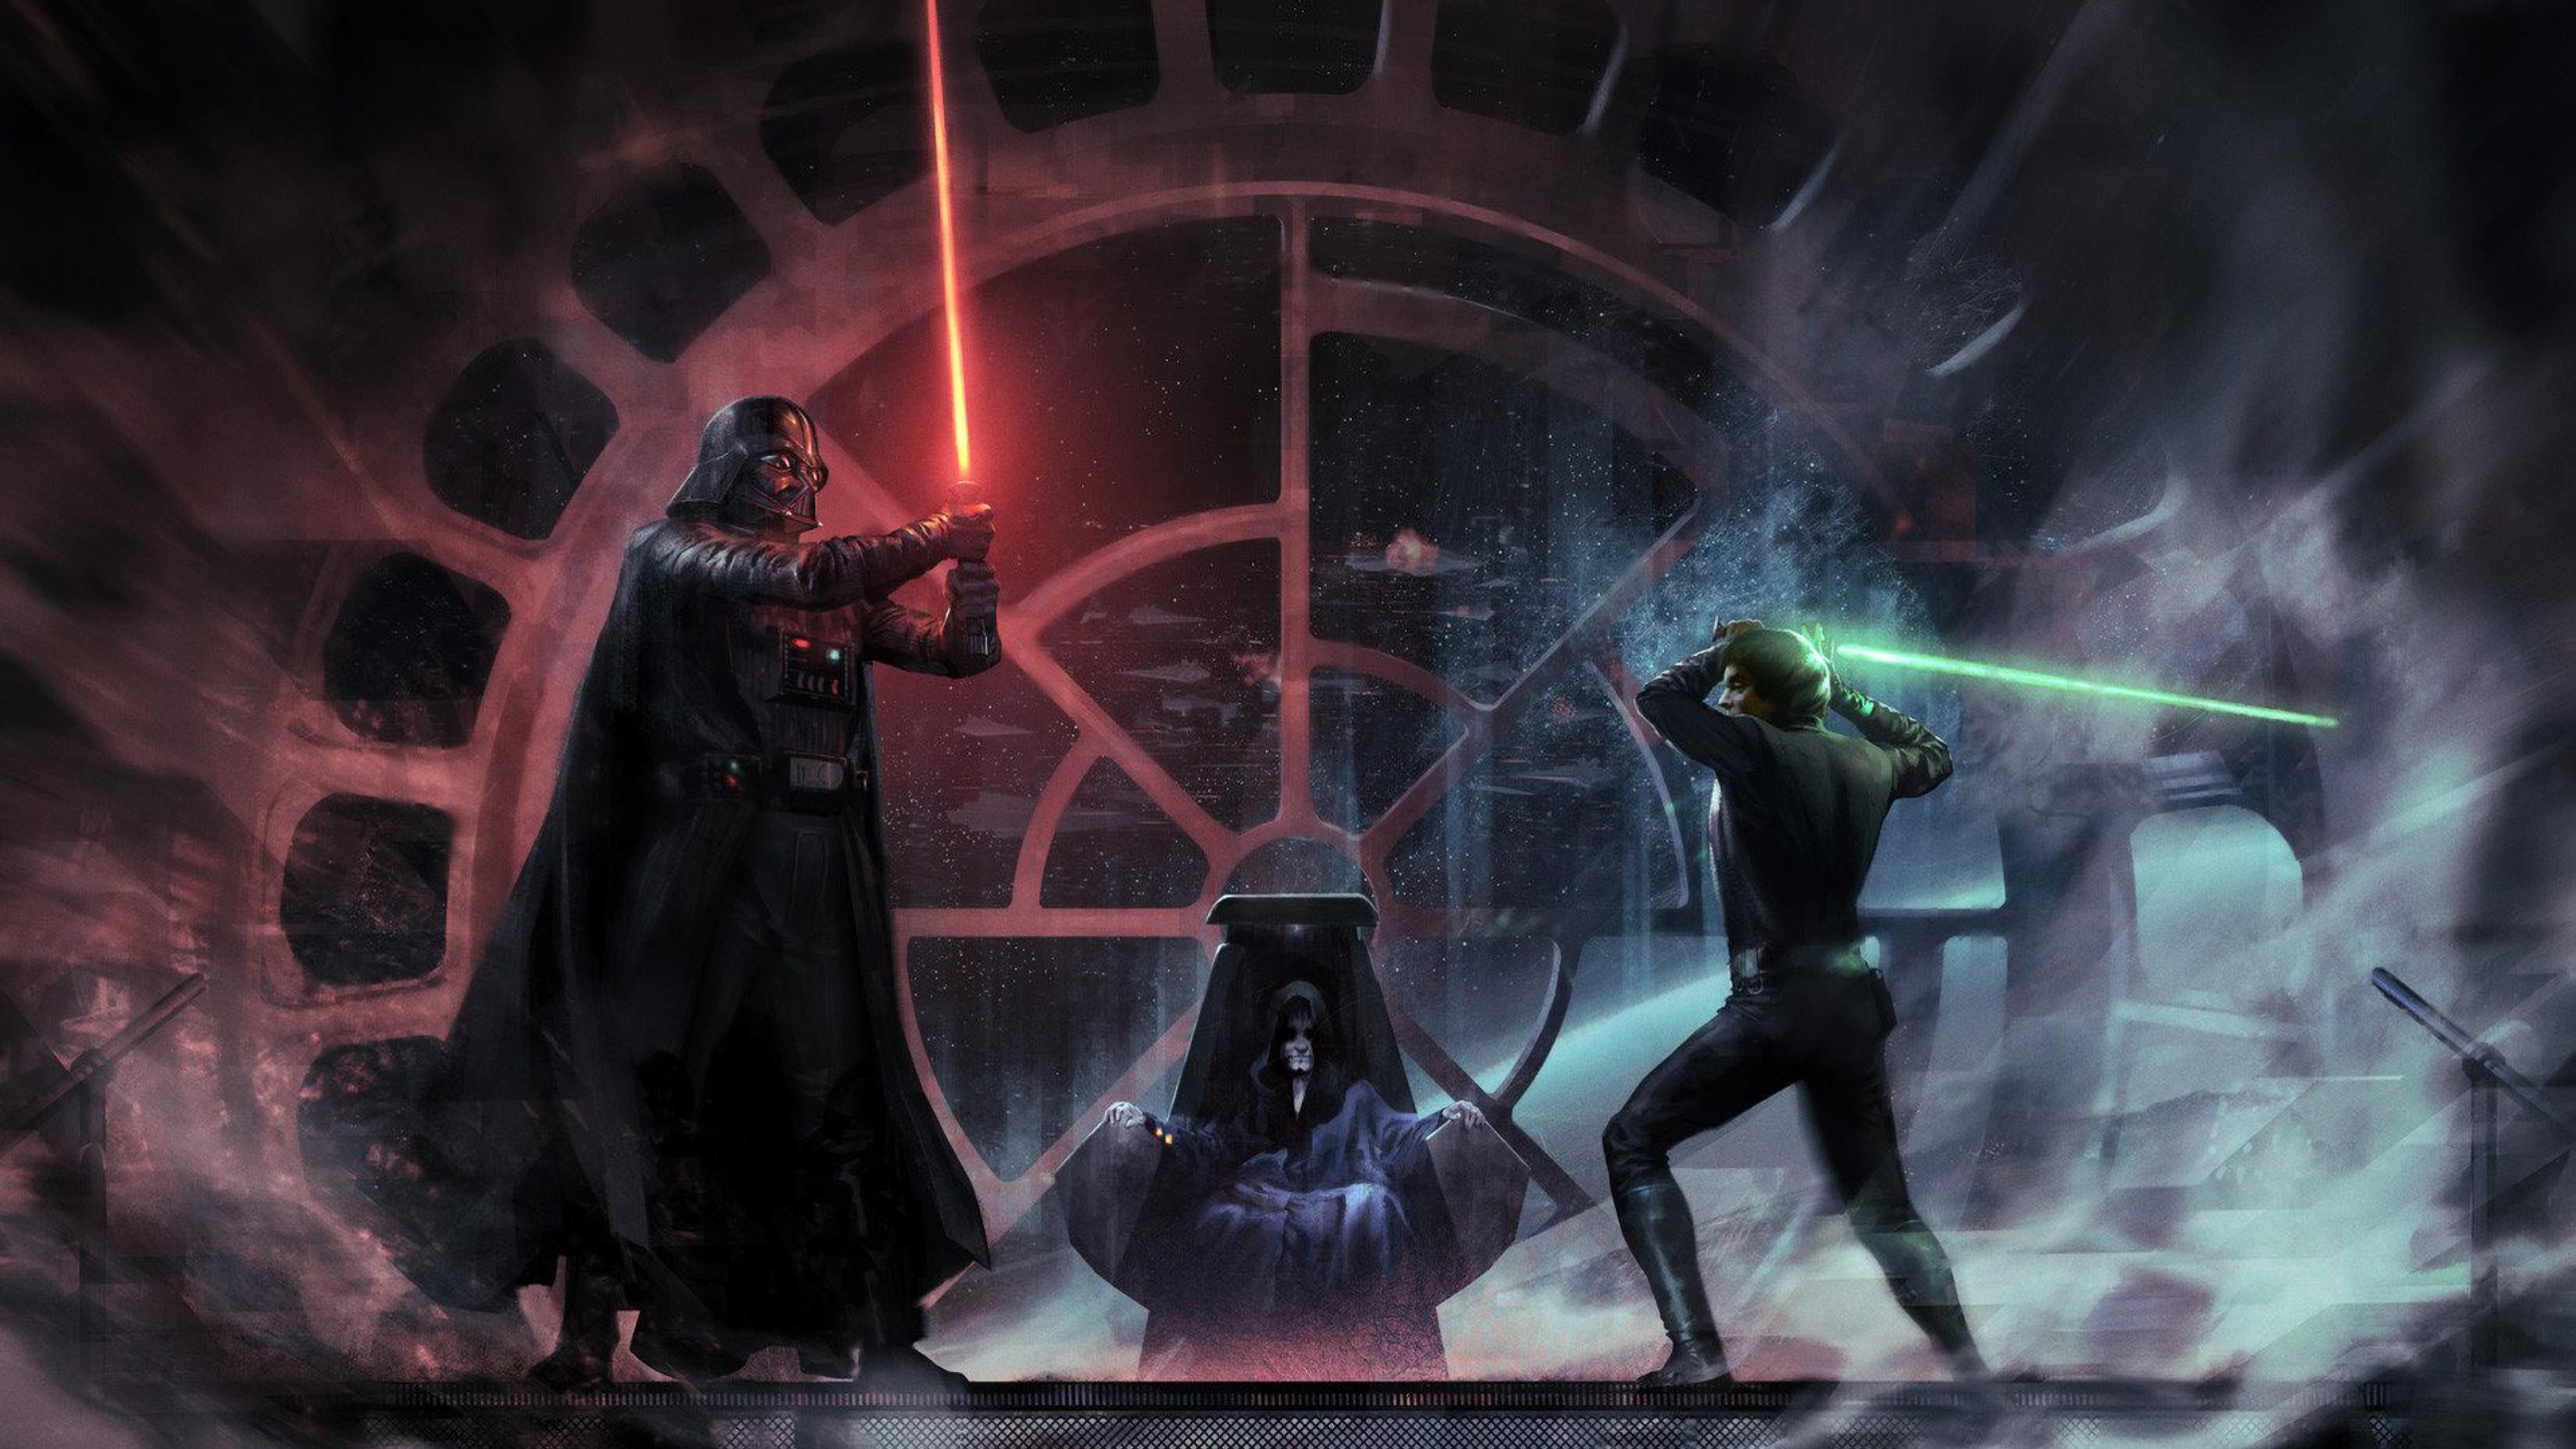 Luke Skywalker vs Darth Vader Emperor Palpatin 4K